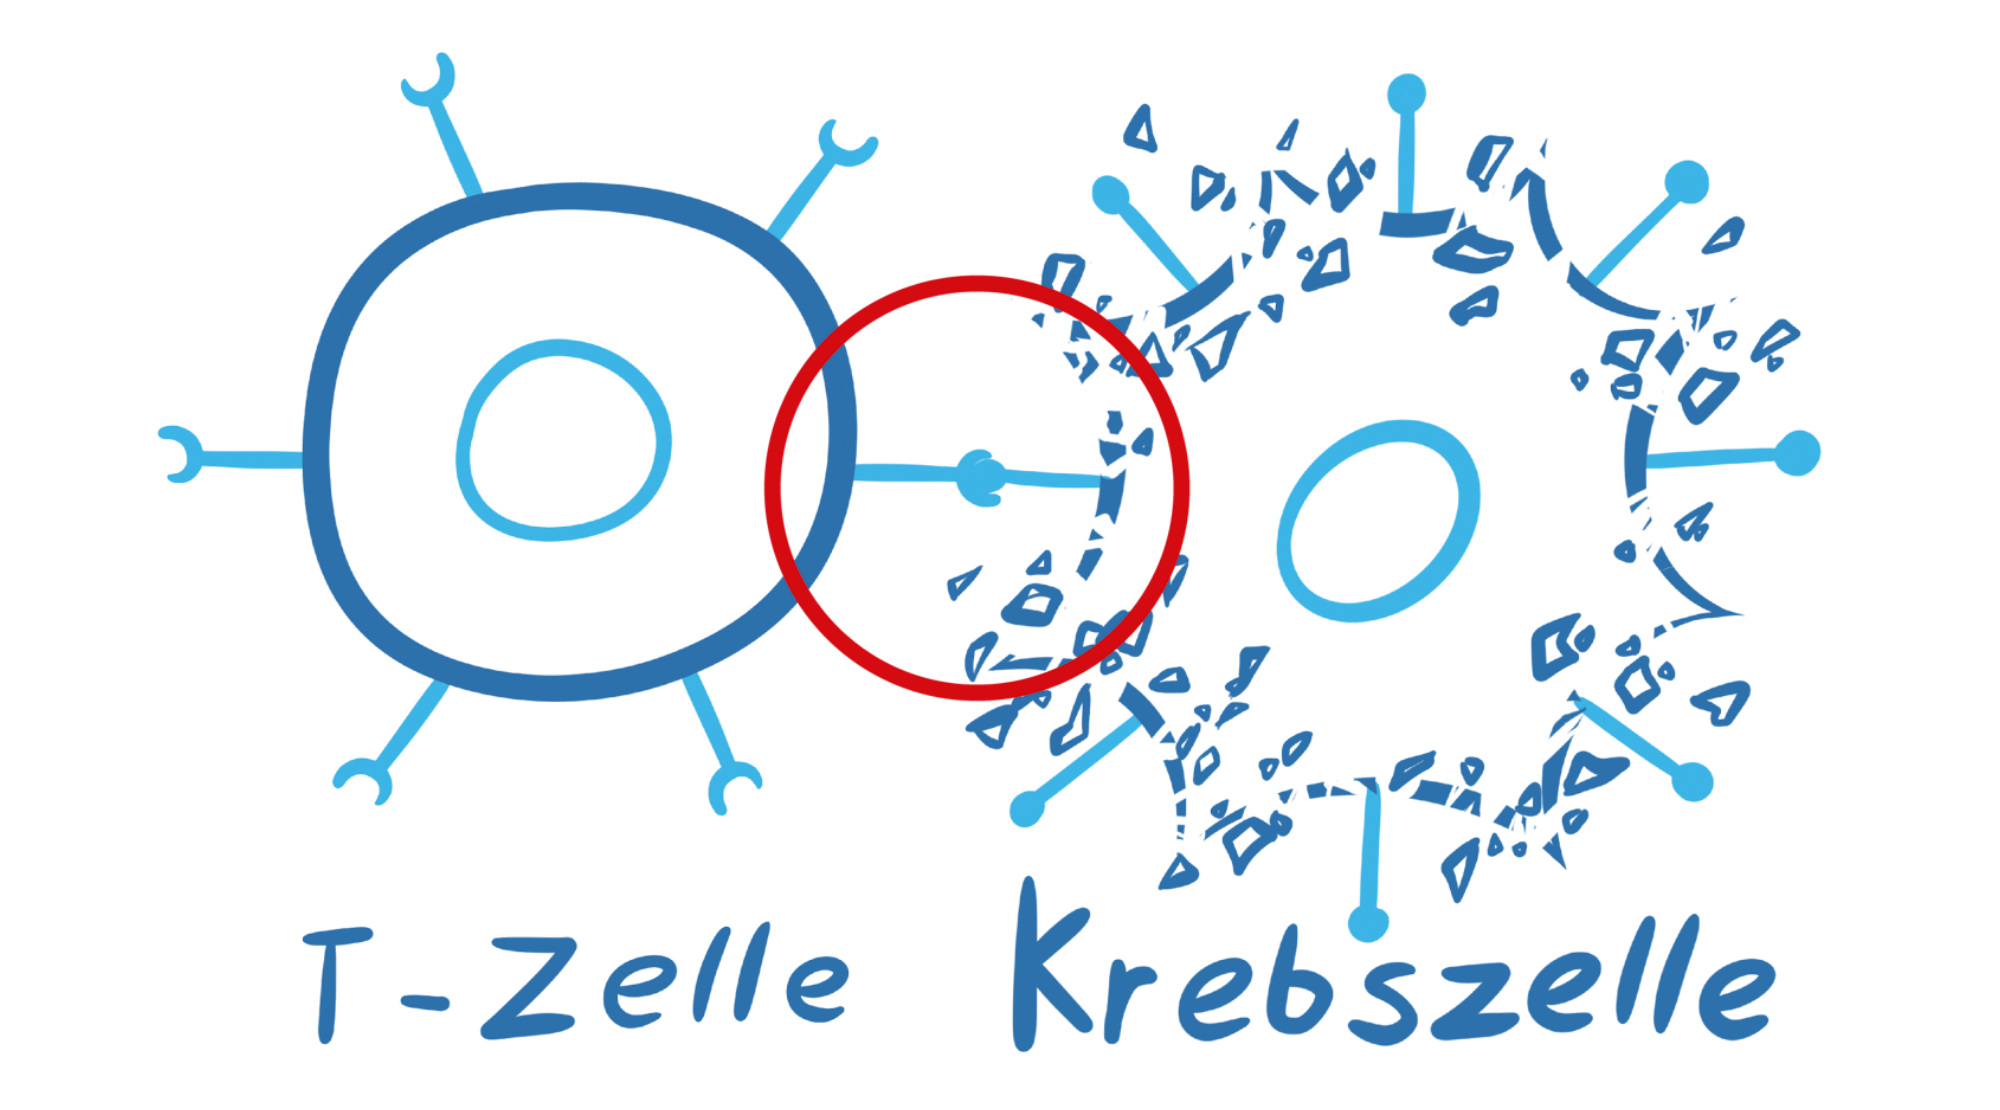 Illustration einer CAR-T-Zelle, die eine Krebszelle zerstört, indem sie mit dem chimären Antigenrezeptor die Krebszelle erkennt, hervorgehoben mit einem roten Kreis